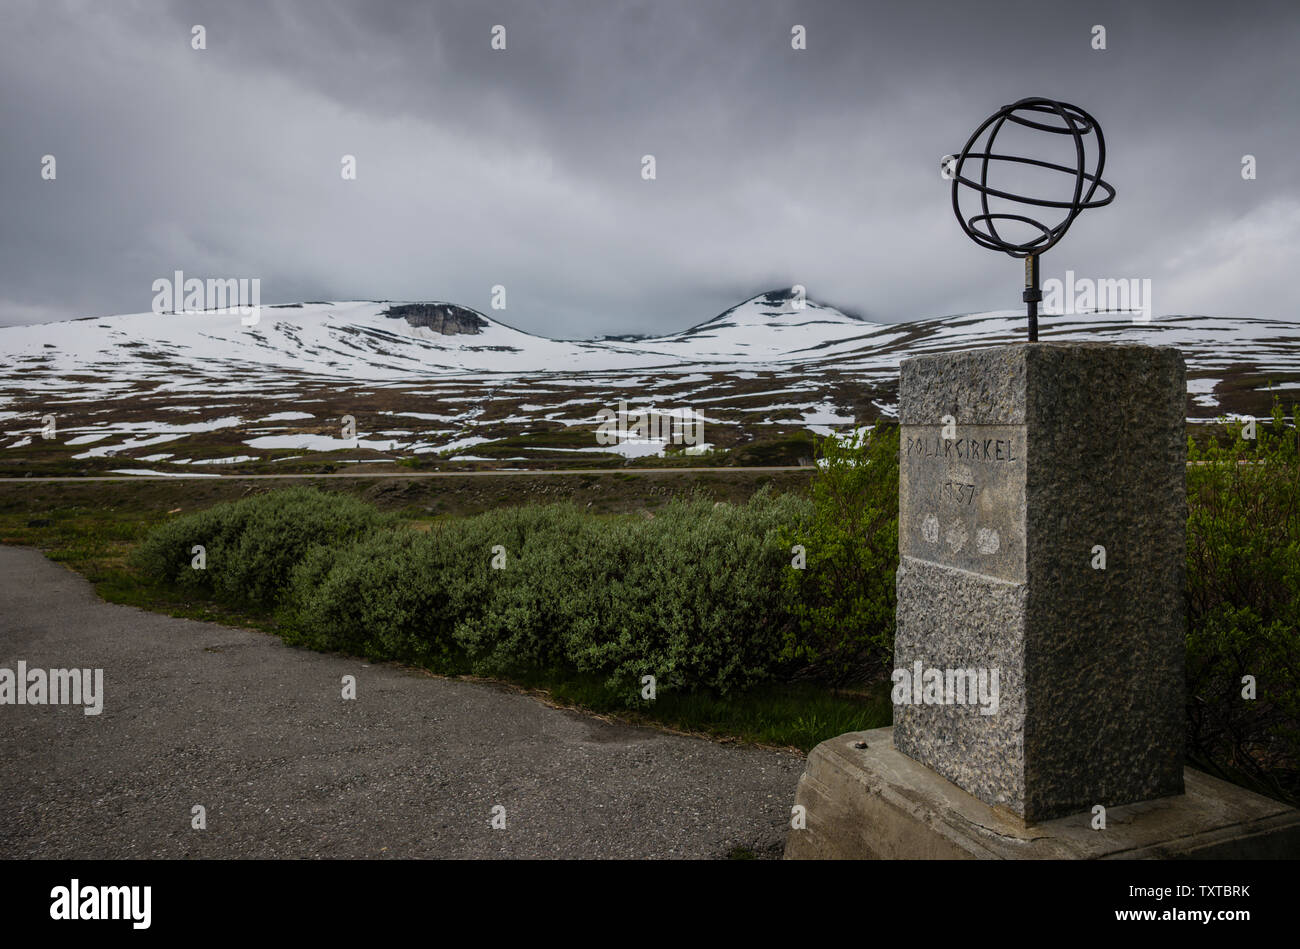 Le Cercle Arctique Centre sur le E6, tel qu'il traverse les 66 degrés nord, en Norvège. Banque D'Images